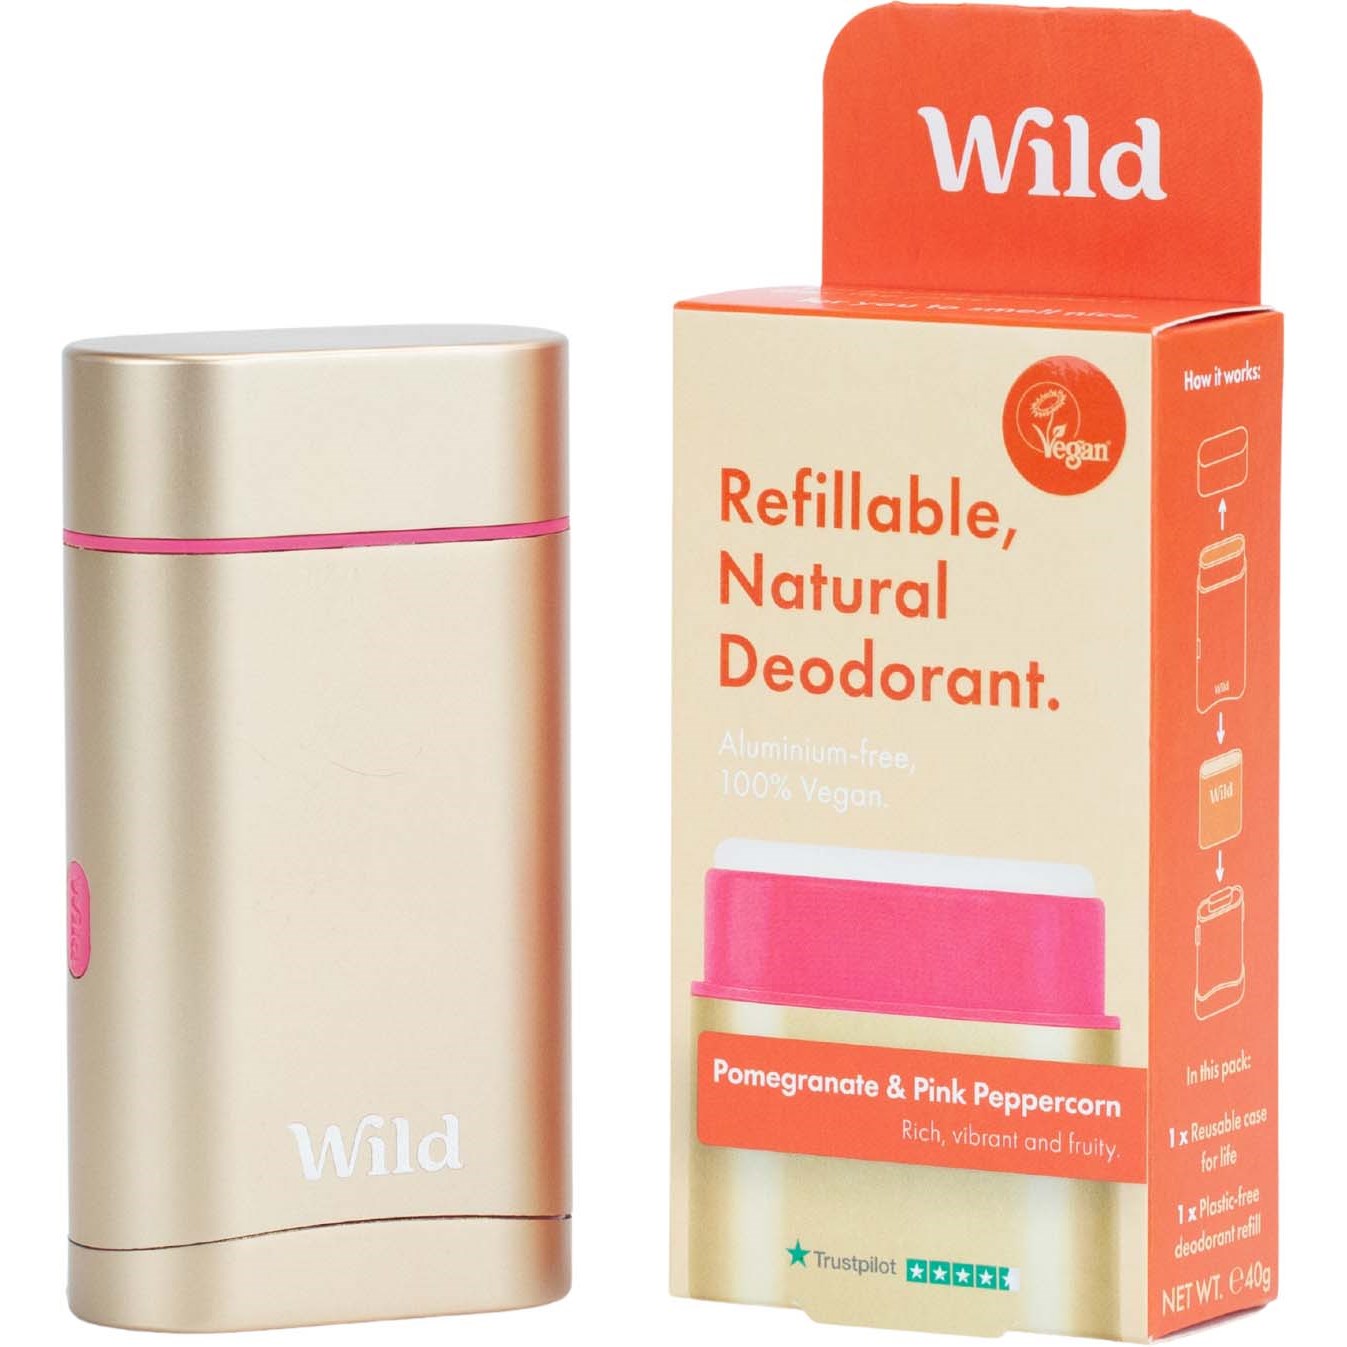 Bilde av Wild Refillable, Natural Deodorant Pomegranate & Pink Peppercorn 40 G